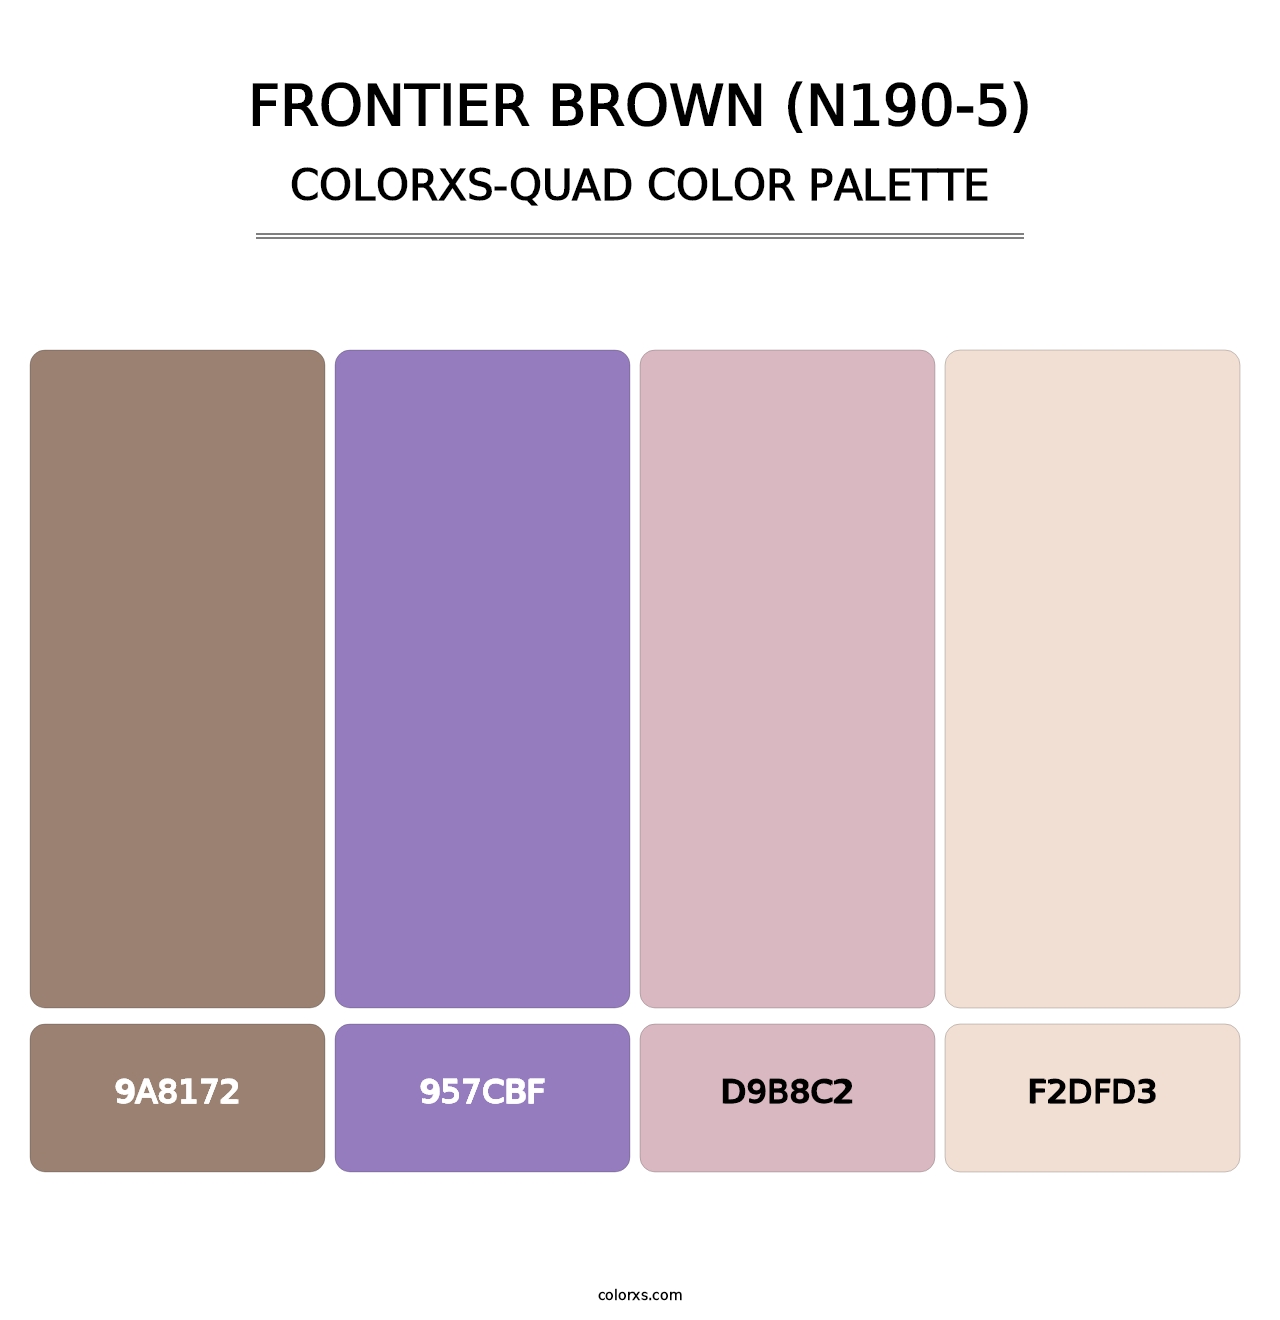 Frontier Brown (N190-5) - Colorxs Quad Palette